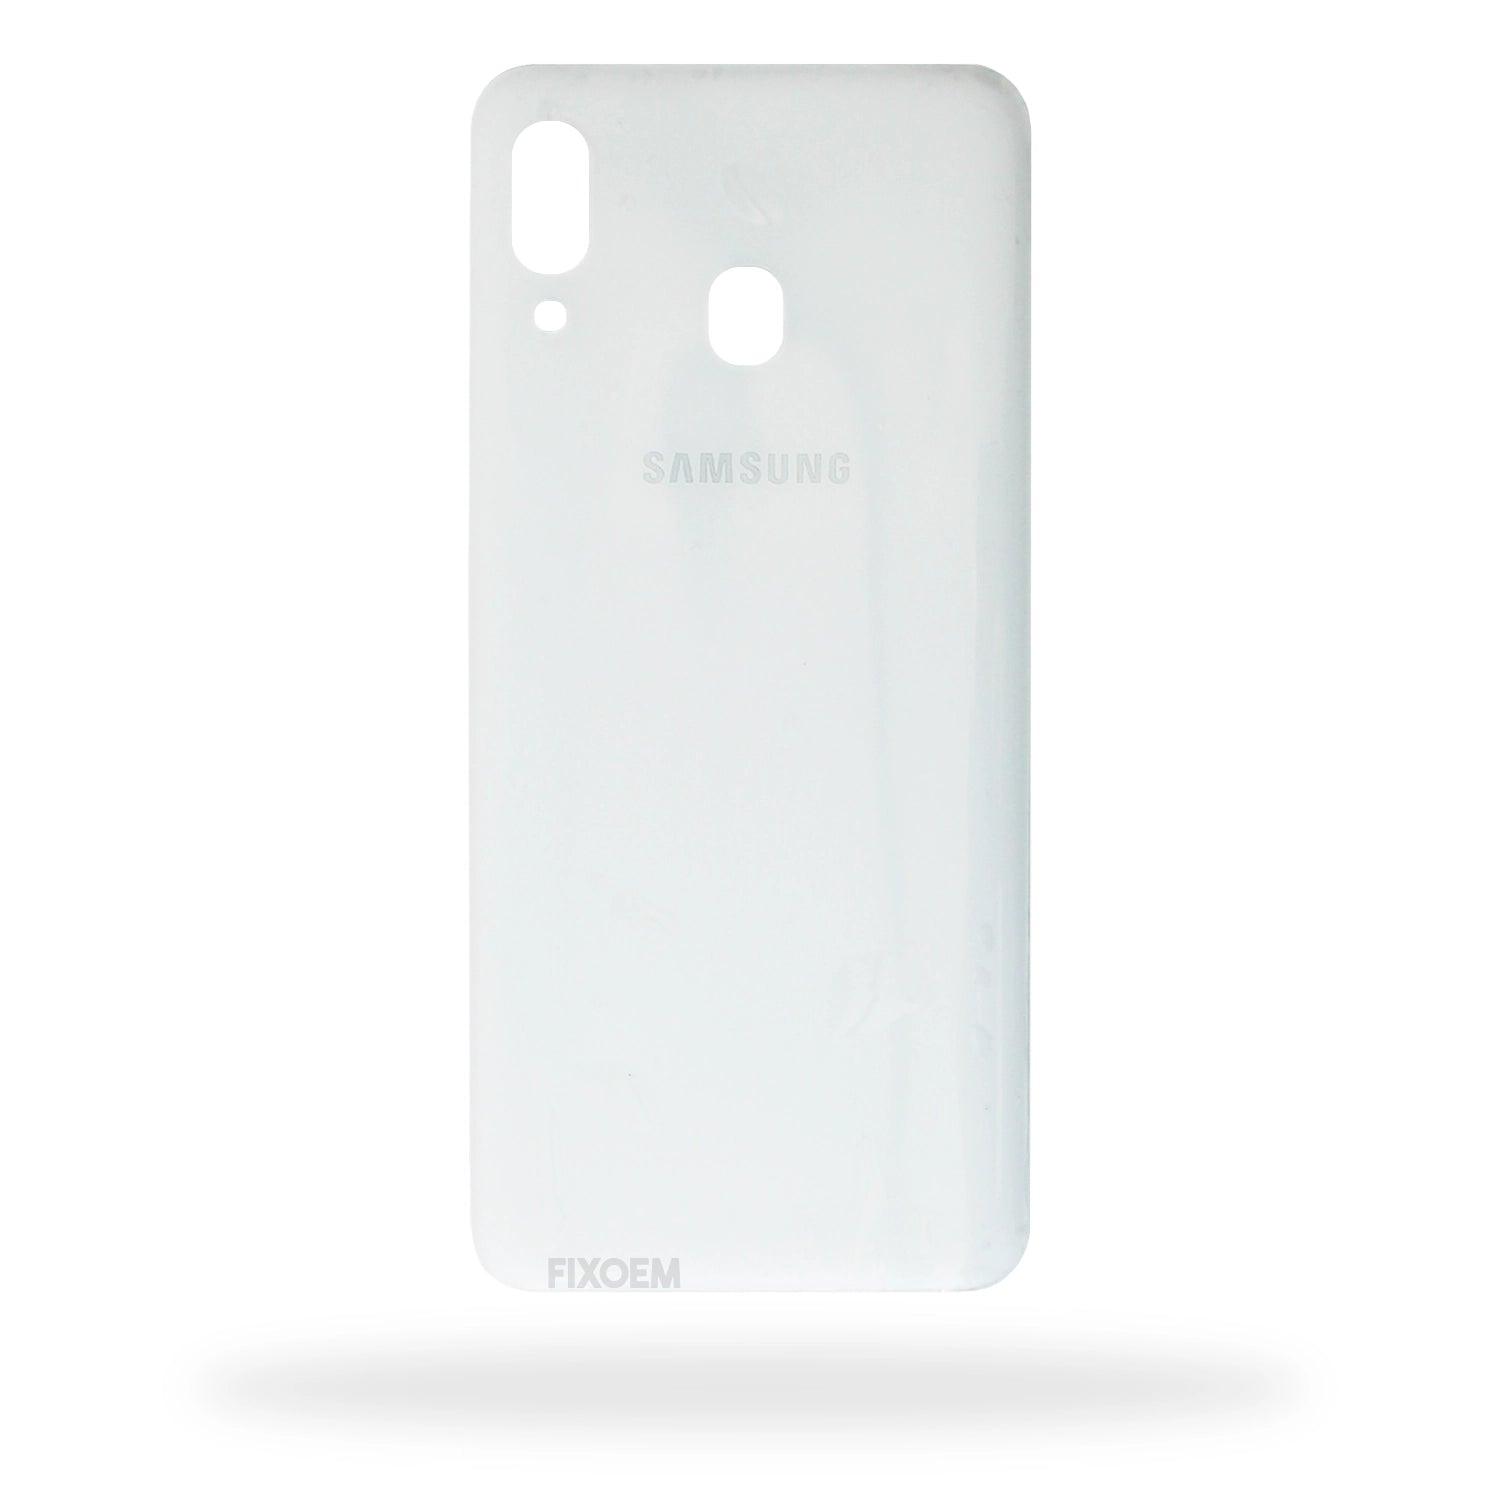 Tapa Trasera Samsung A30 Sm-A305F a solo $ 60.00 Refaccion y puestos celulares, refurbish y microelectronica.- FixOEM